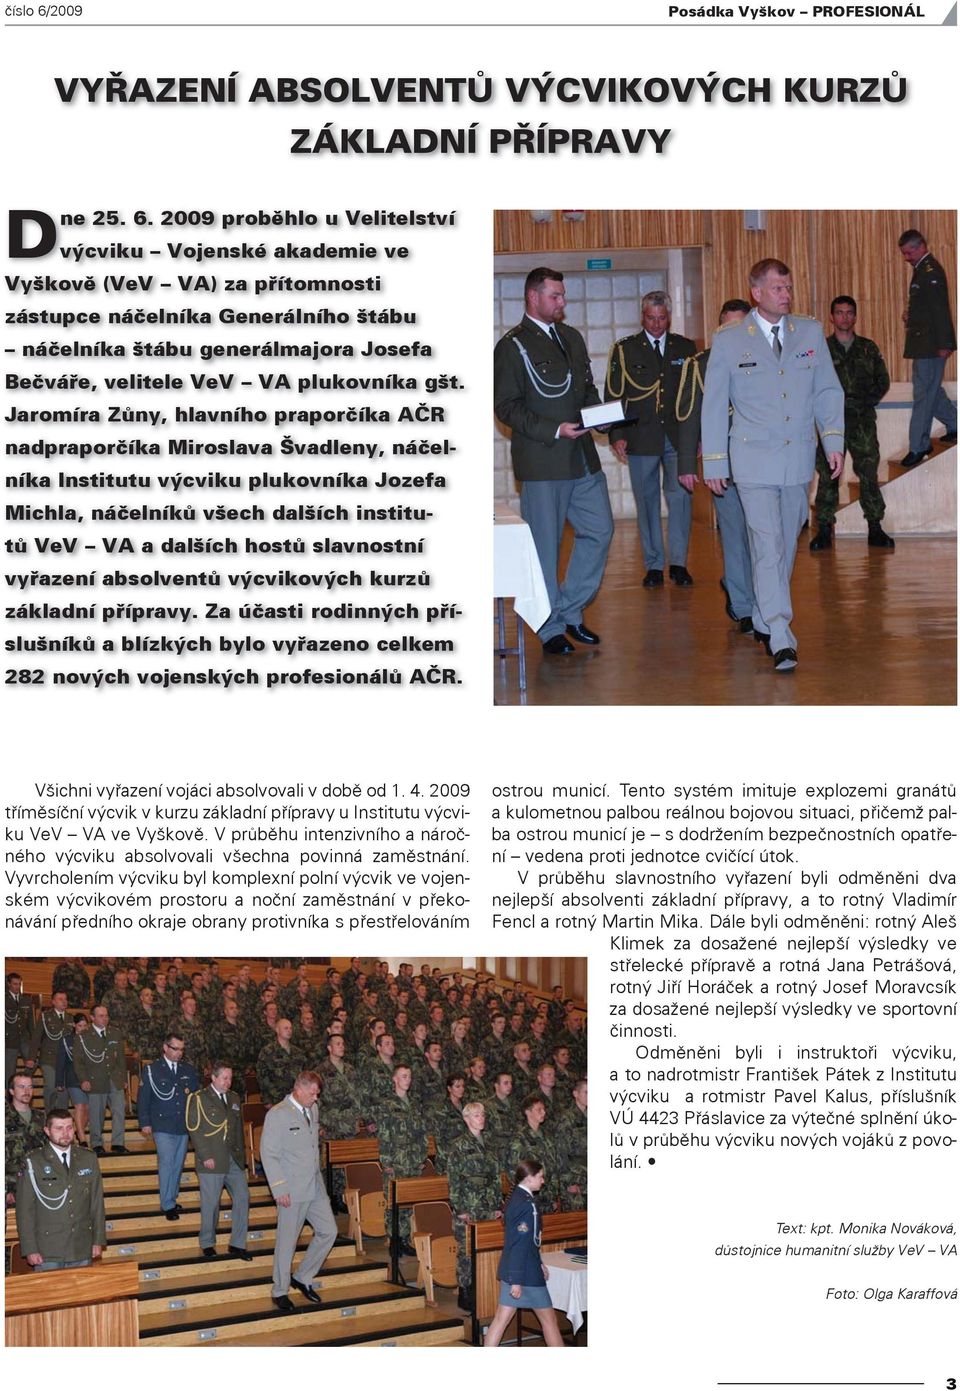 2009 proběhlo u Velitelství výcviku Vojenské akademie ve Vyškově (VeV VA) za přítomnosti zástupce náčelníka Generálního štábu náčelníka štábu generálmajora Josefa Bečváře, velitele VeV VA plukovníka